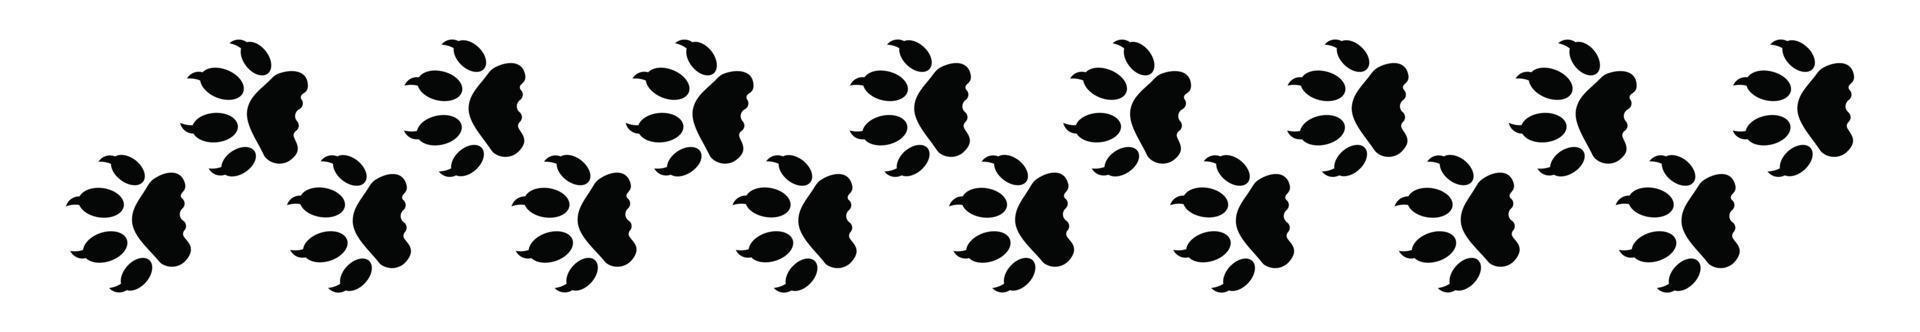 Pfoten-Fuß-Trail-Druck von Tieren, verschiedenen Tierpfoten-Aktienvektor-Icon-Sets. vektor